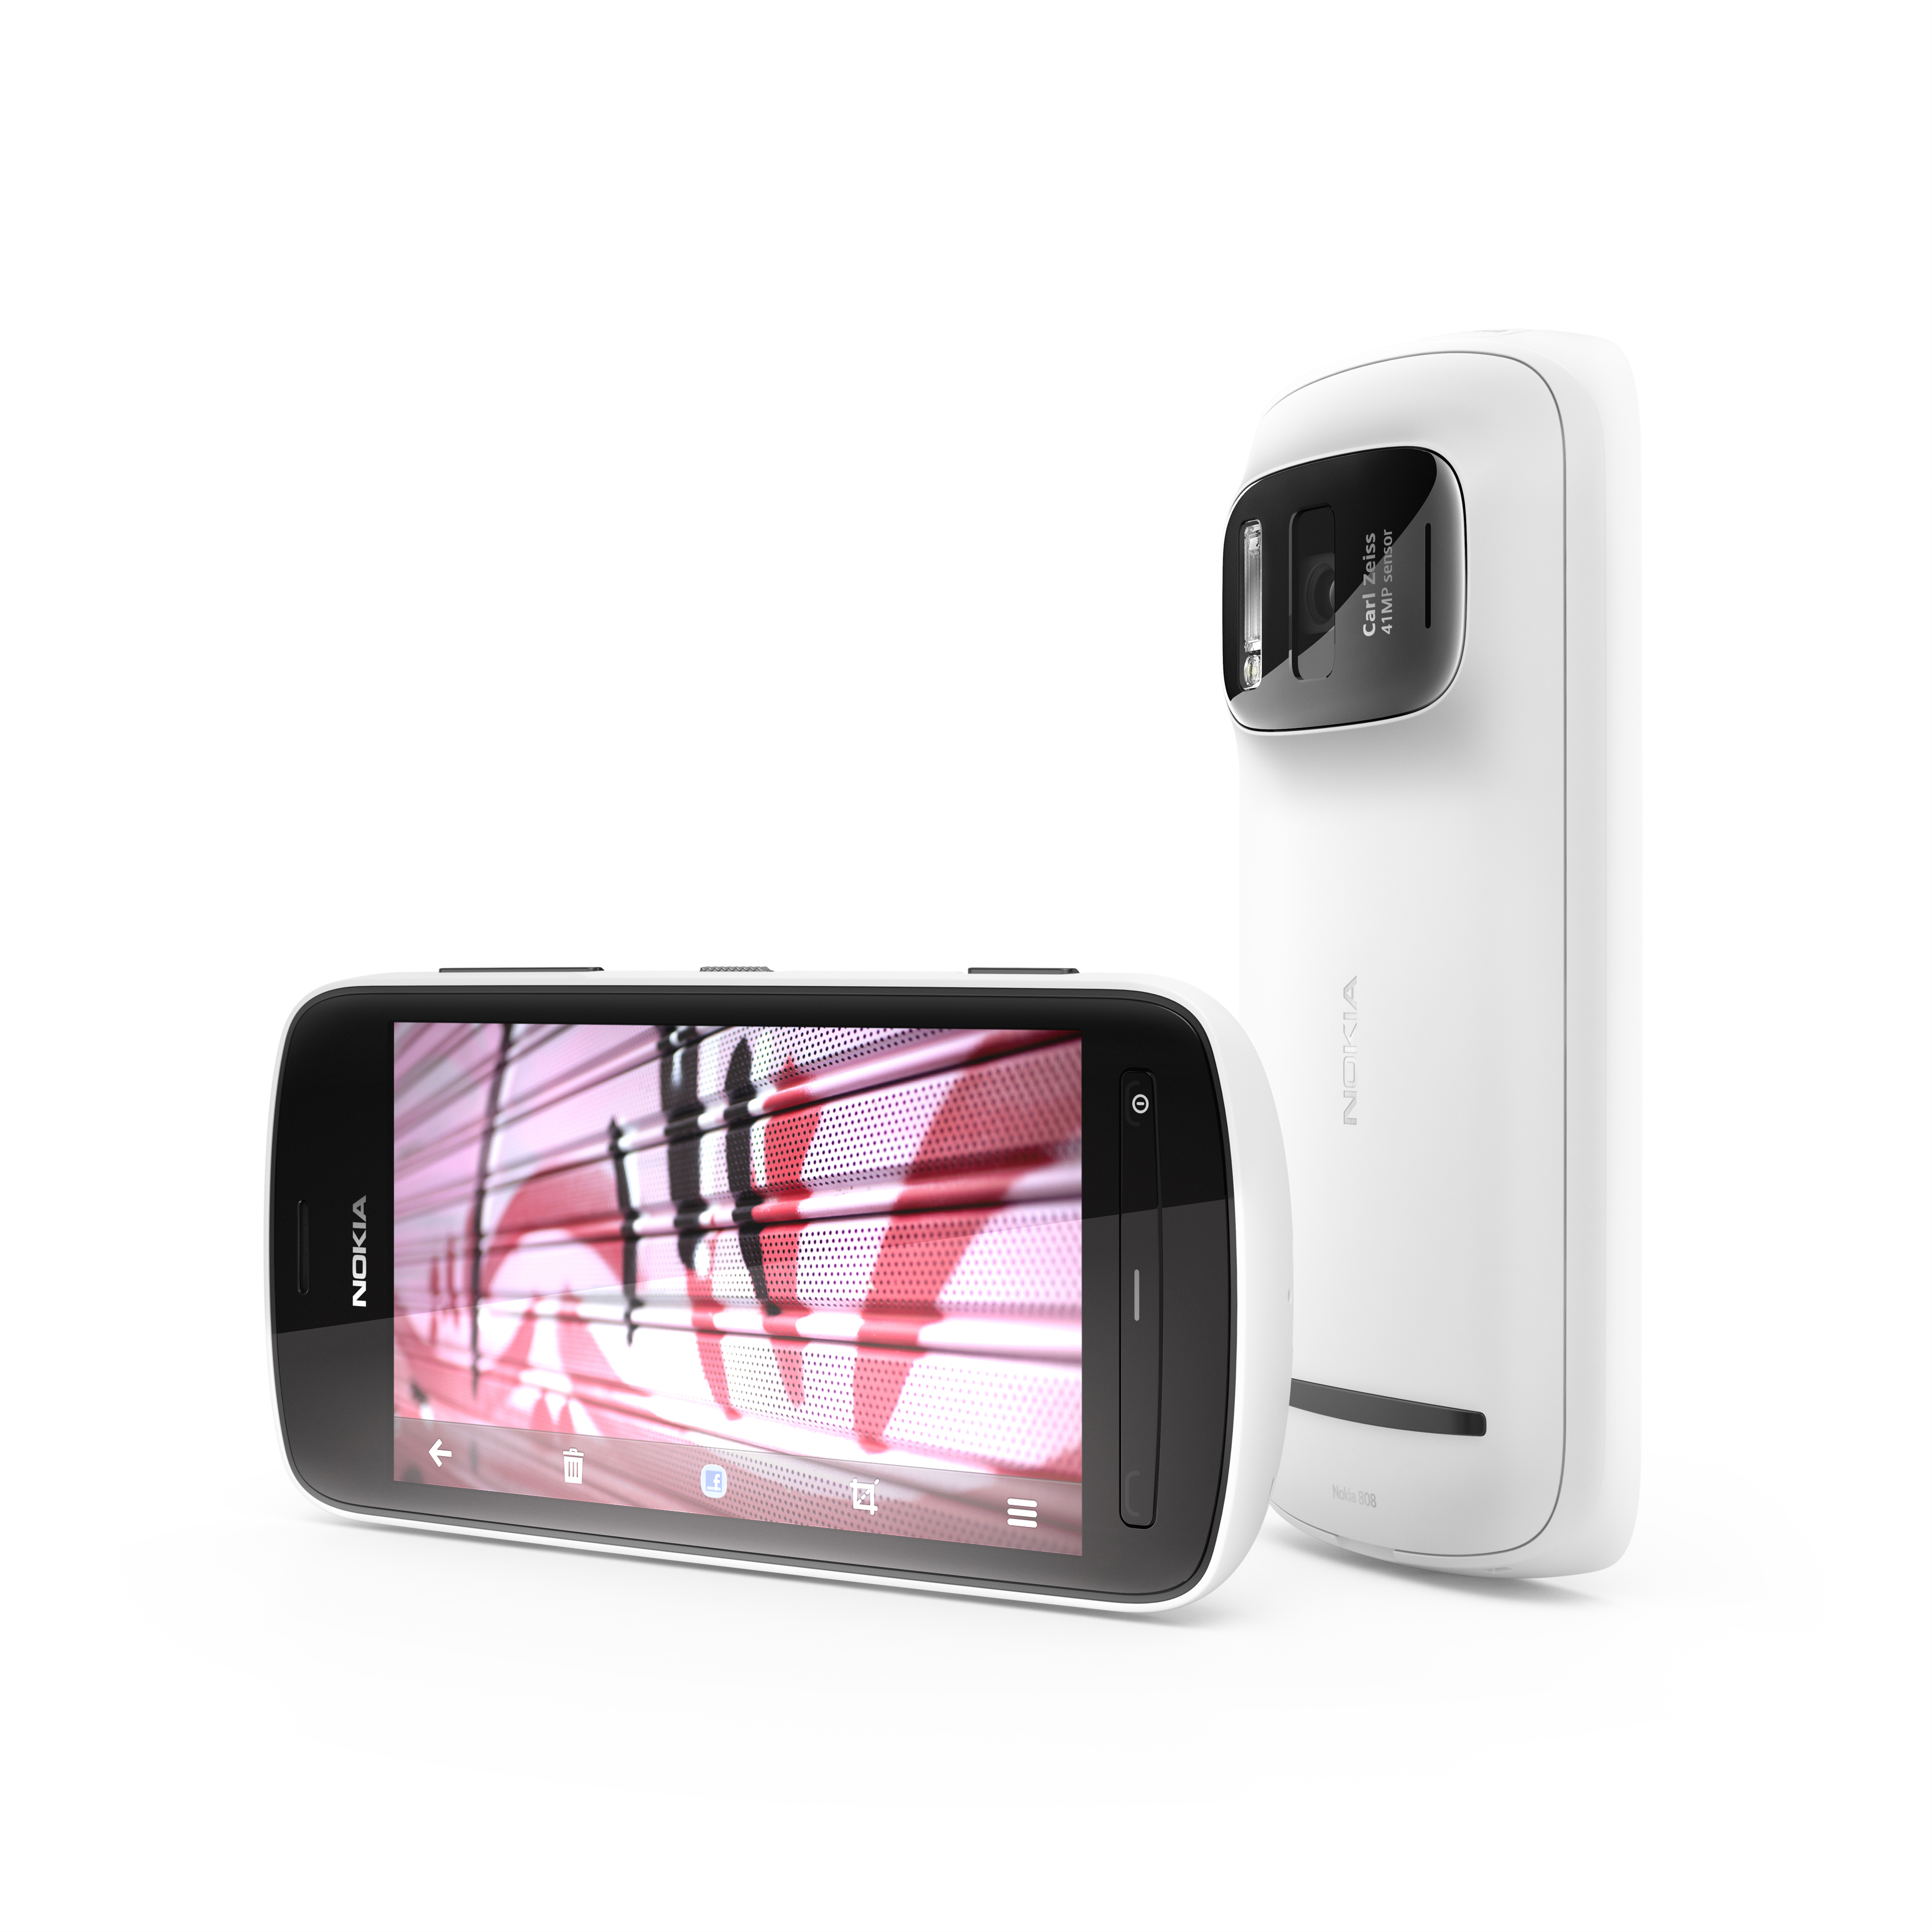 Nokia a prezentat în România telefonul cu cameră foto de 41 de megapixeli. Ajunge în magazine din iulie la 3.000 de lei